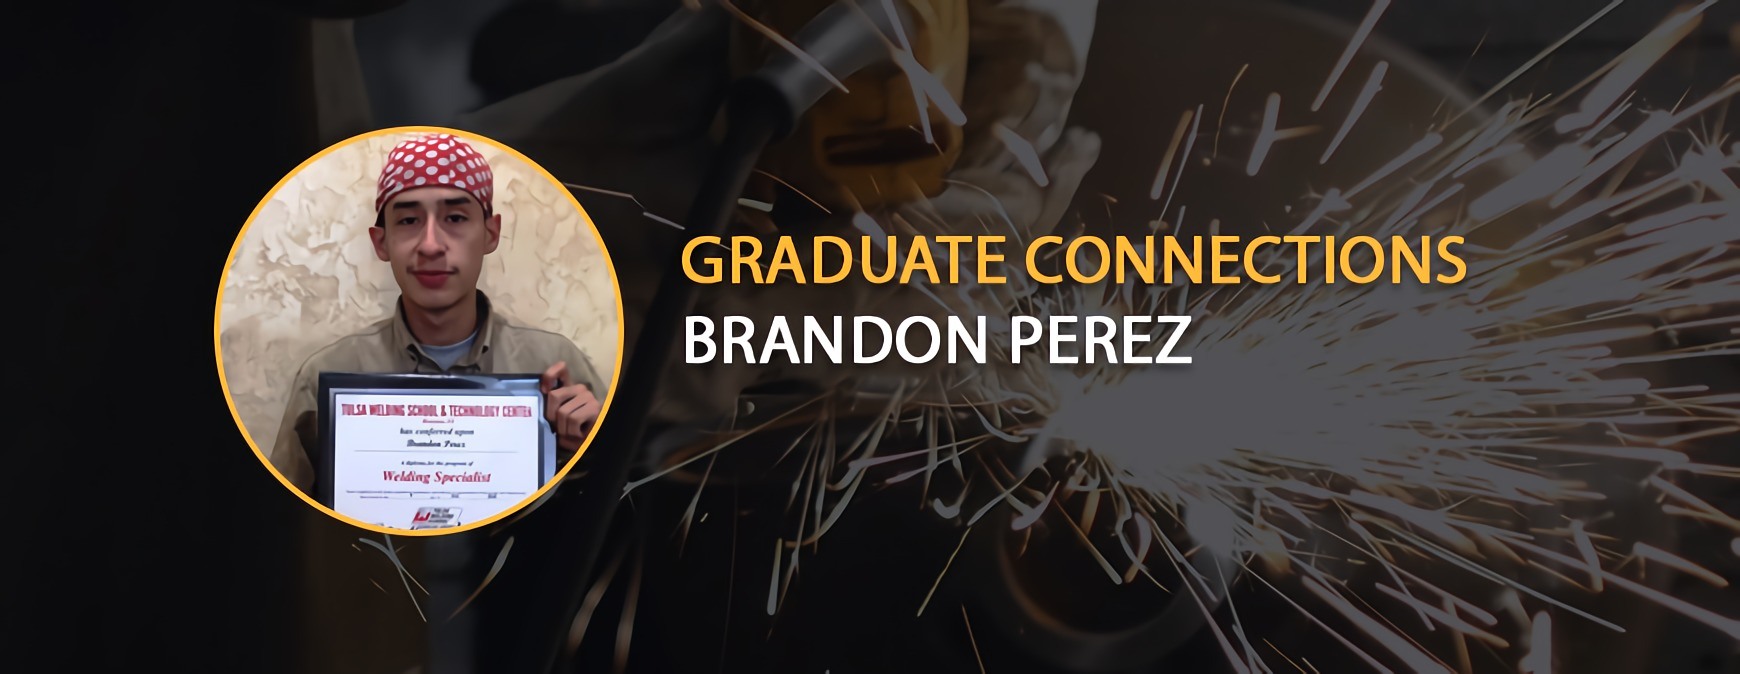 brandon perez graduate connections